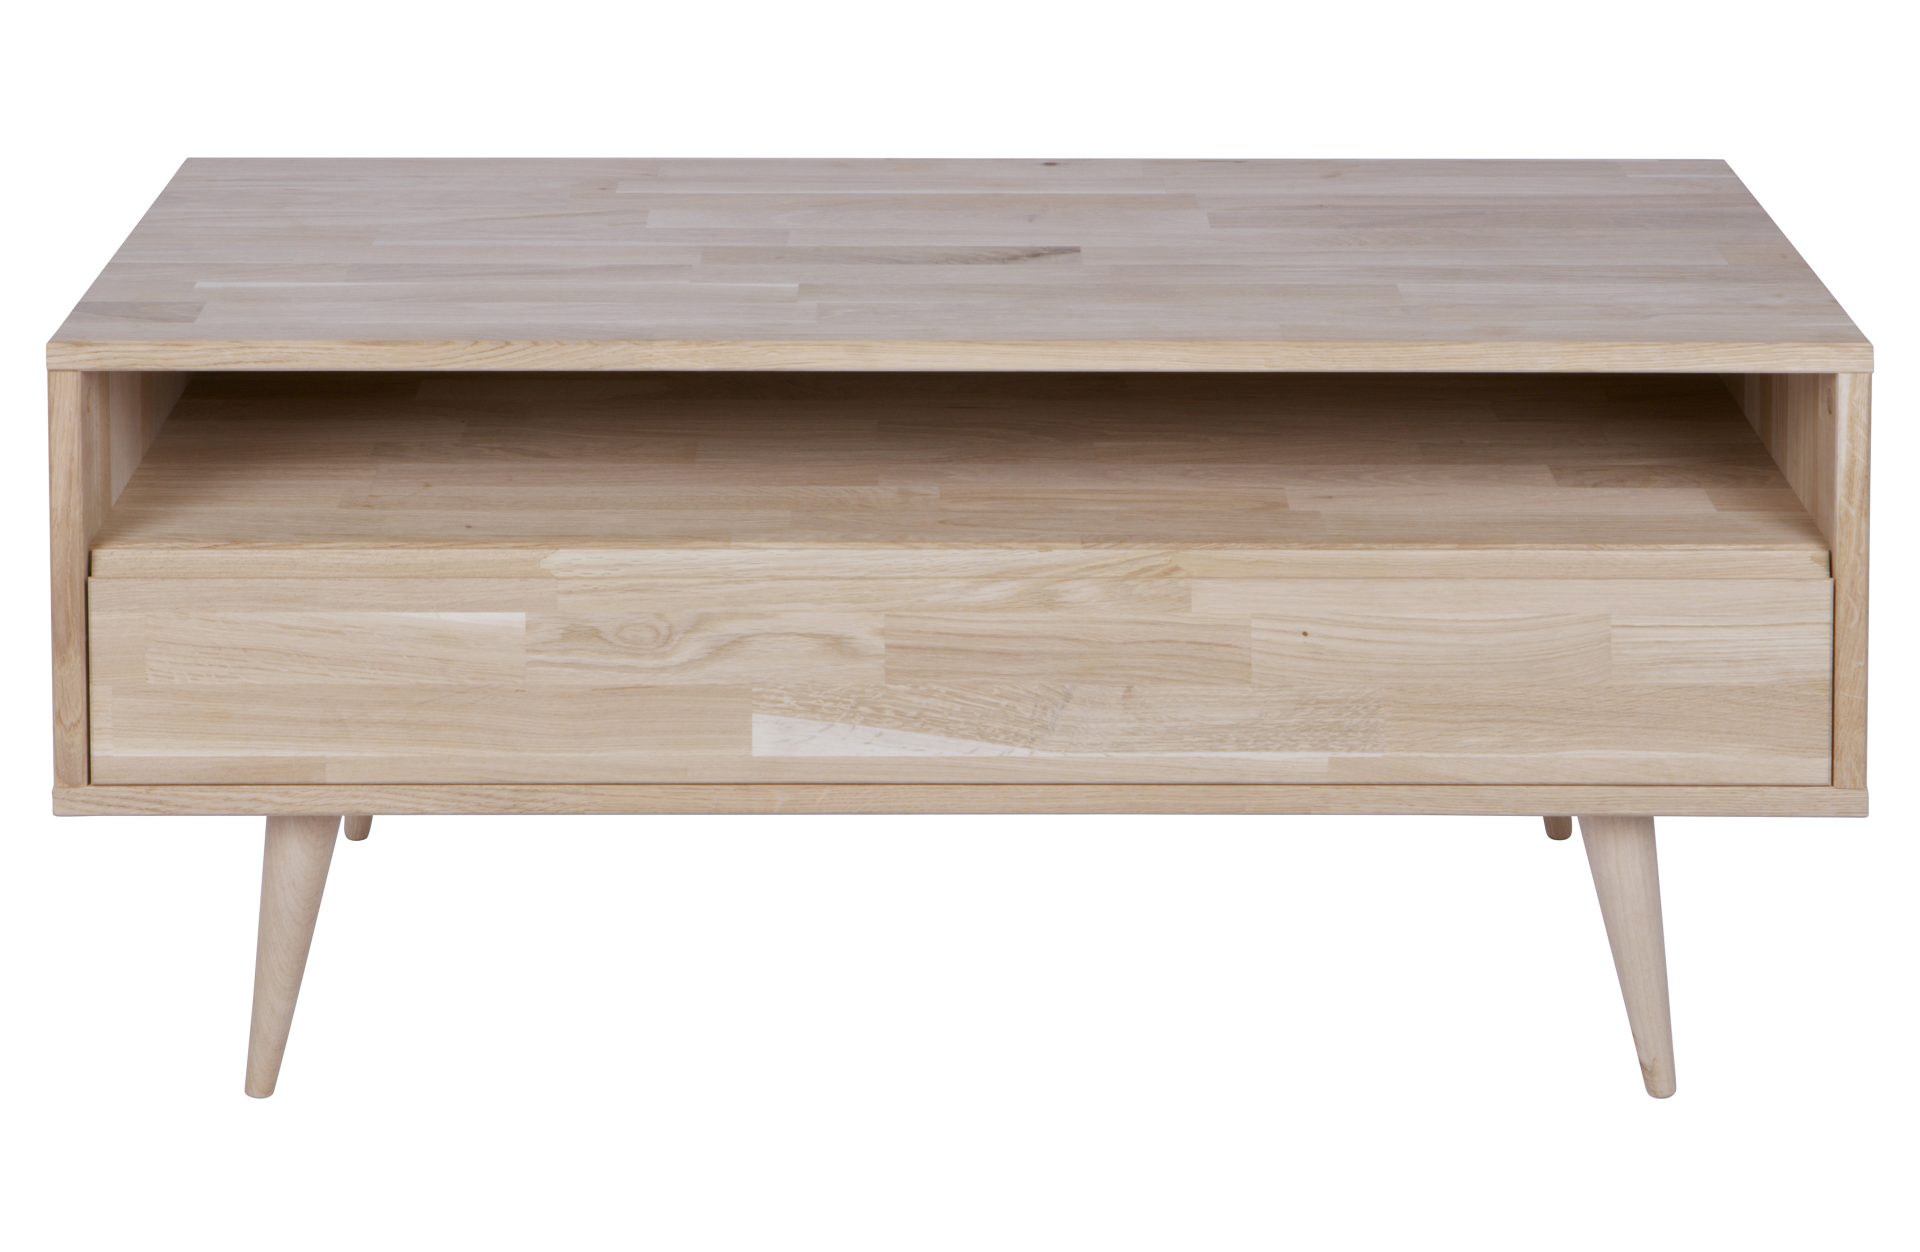 Das Tv-Board Tygo wurde aus Eichenholz hergestellt, welches ein natürlichen Farbton besitzt. Das Board hat eine Breite von 100 cm und besitzt eine Schublade.